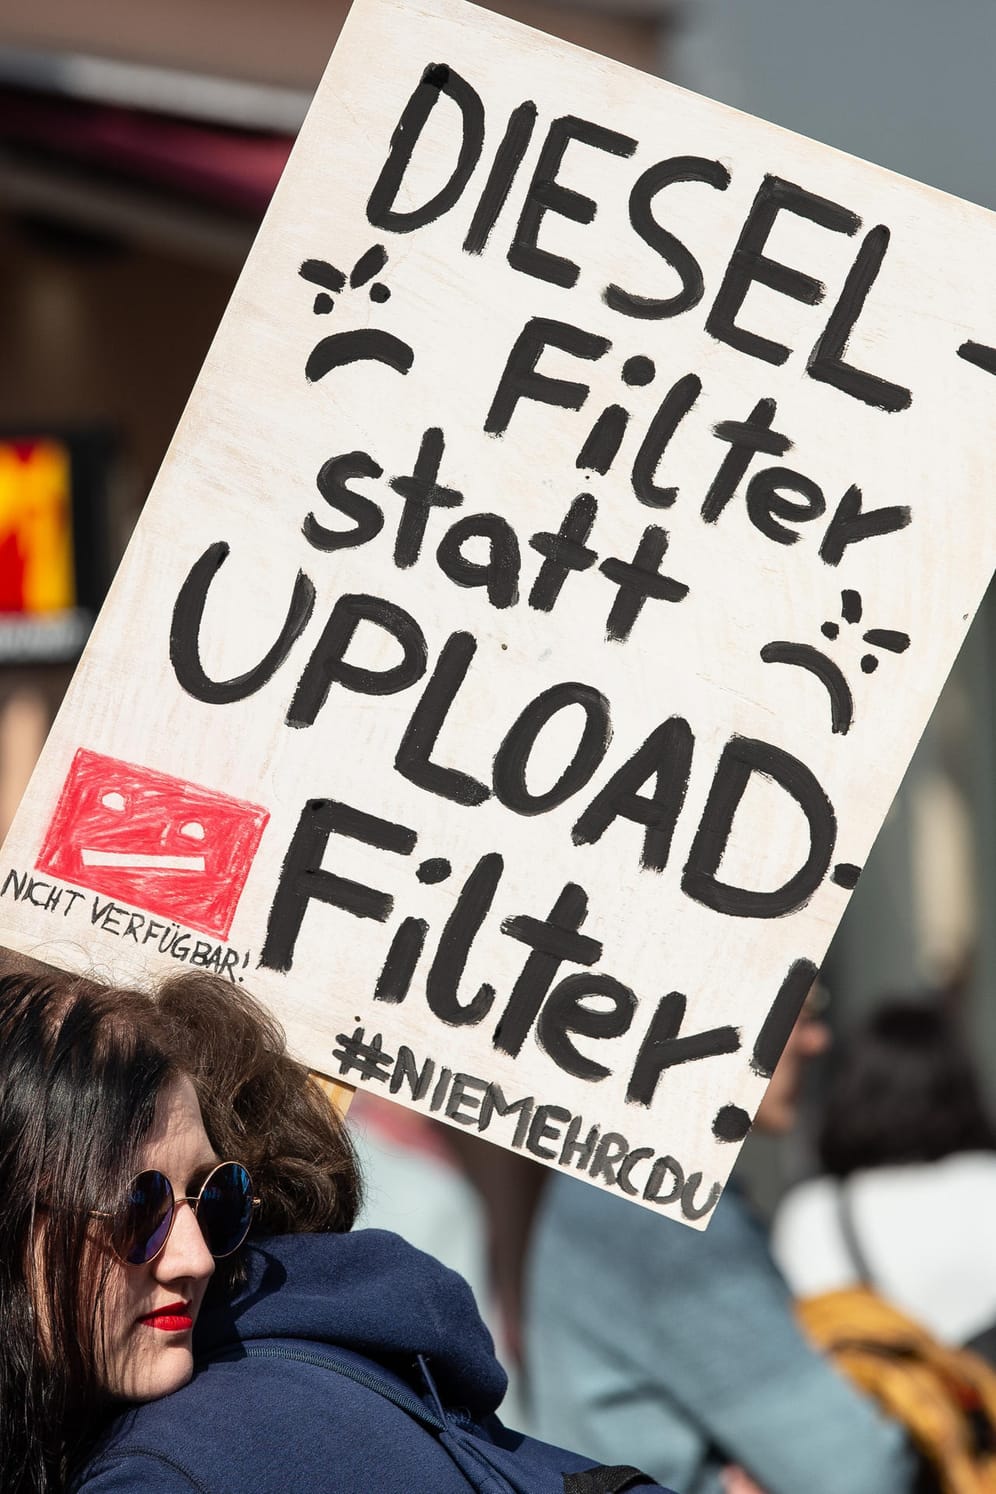 Demonstranten in Göttingen: "Diesel-Filter statt Upload-Filter – #NIEMEHRCDU" steht auf einem Transparent.